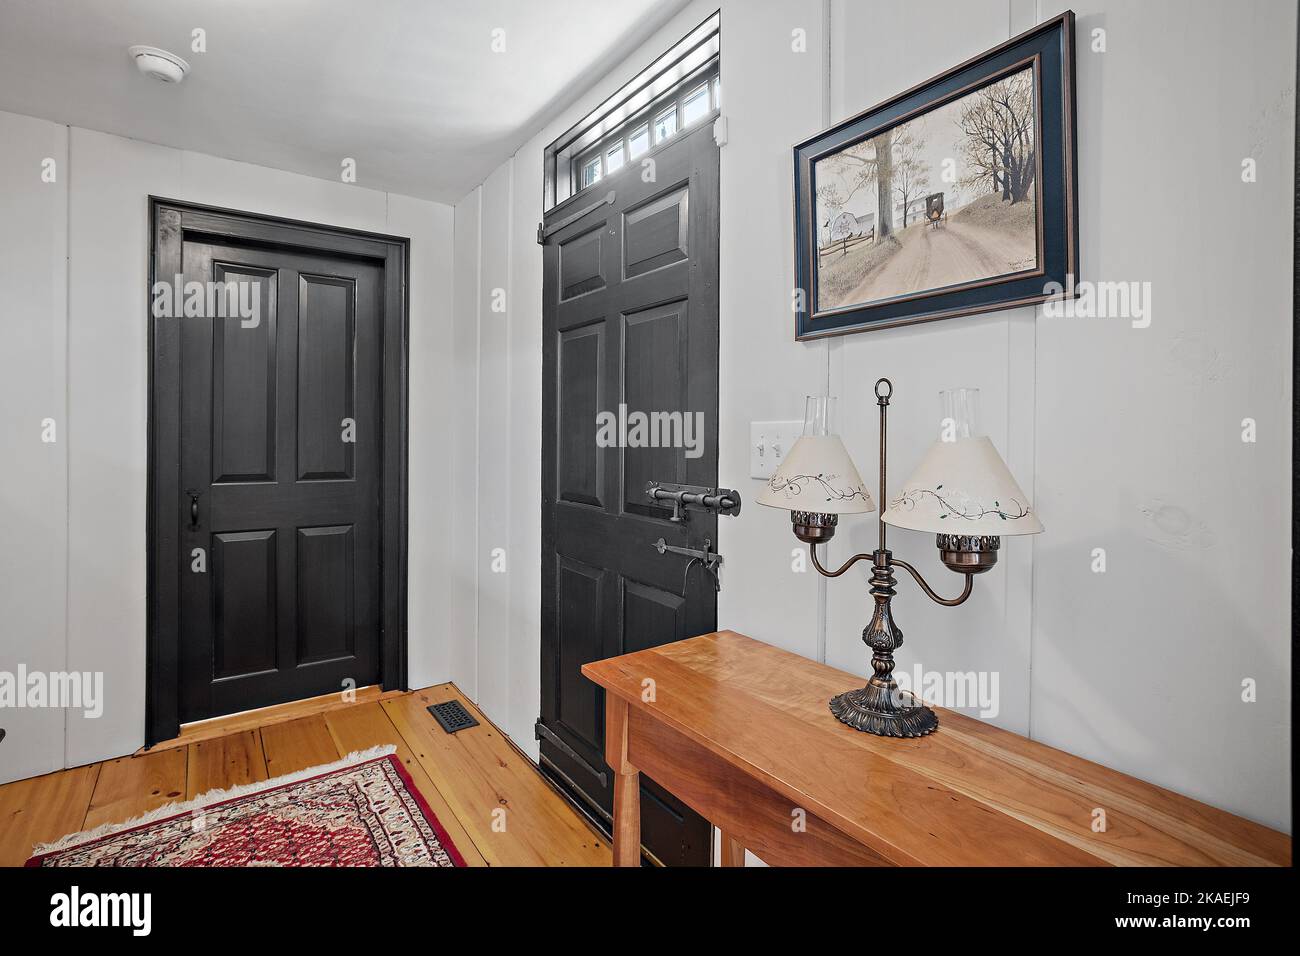 L'intérieur d'un couloir avec porte avant noire et une lampe de table de  style ancien sur une table en bois Photo Stock - Alamy